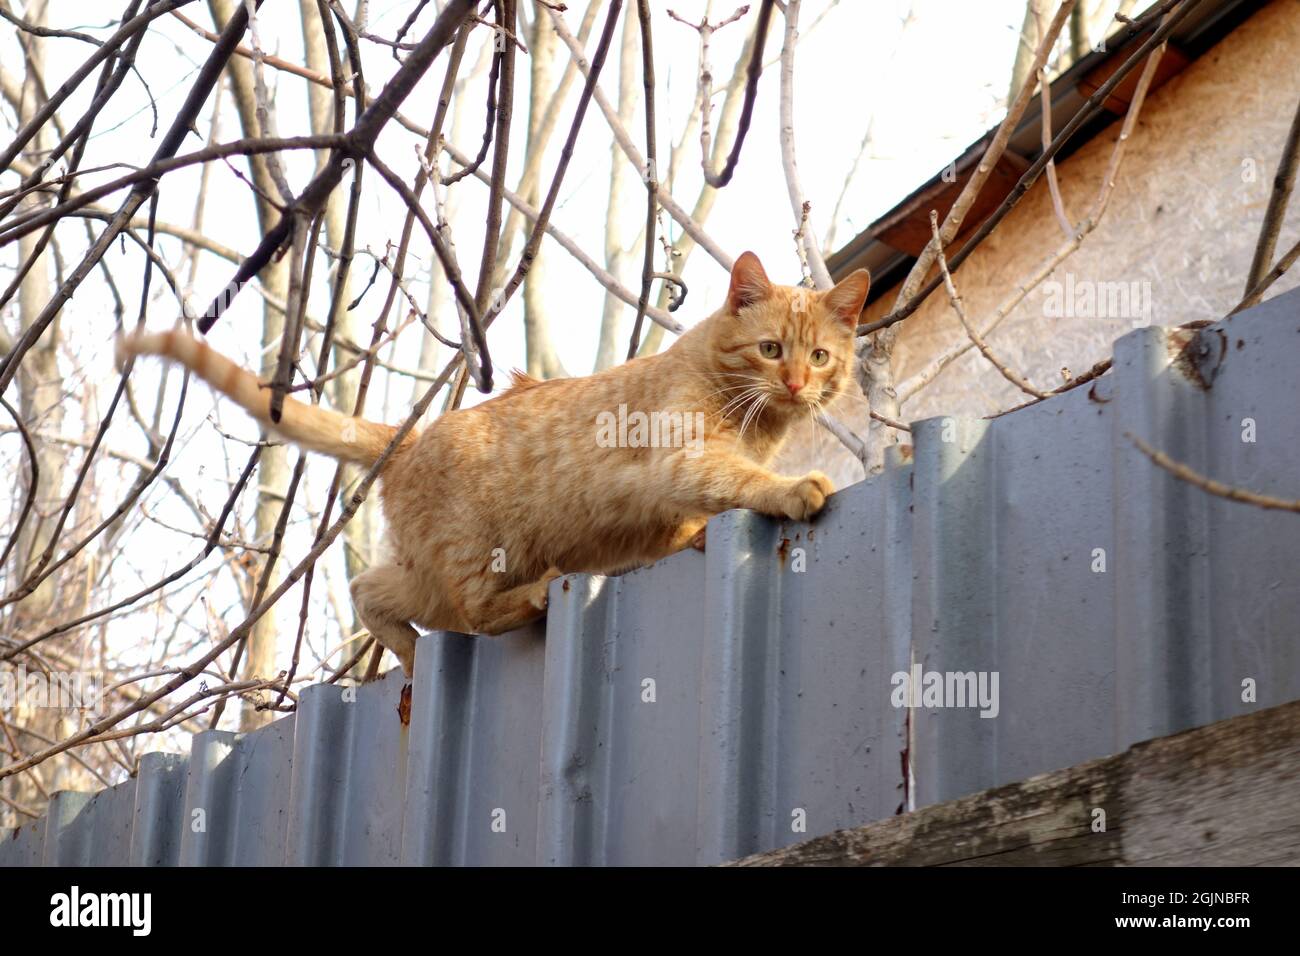 Ágil gato rojo tabby caminando con confianza en el borde de la valla manteniendo su equilibrio Foto de stock